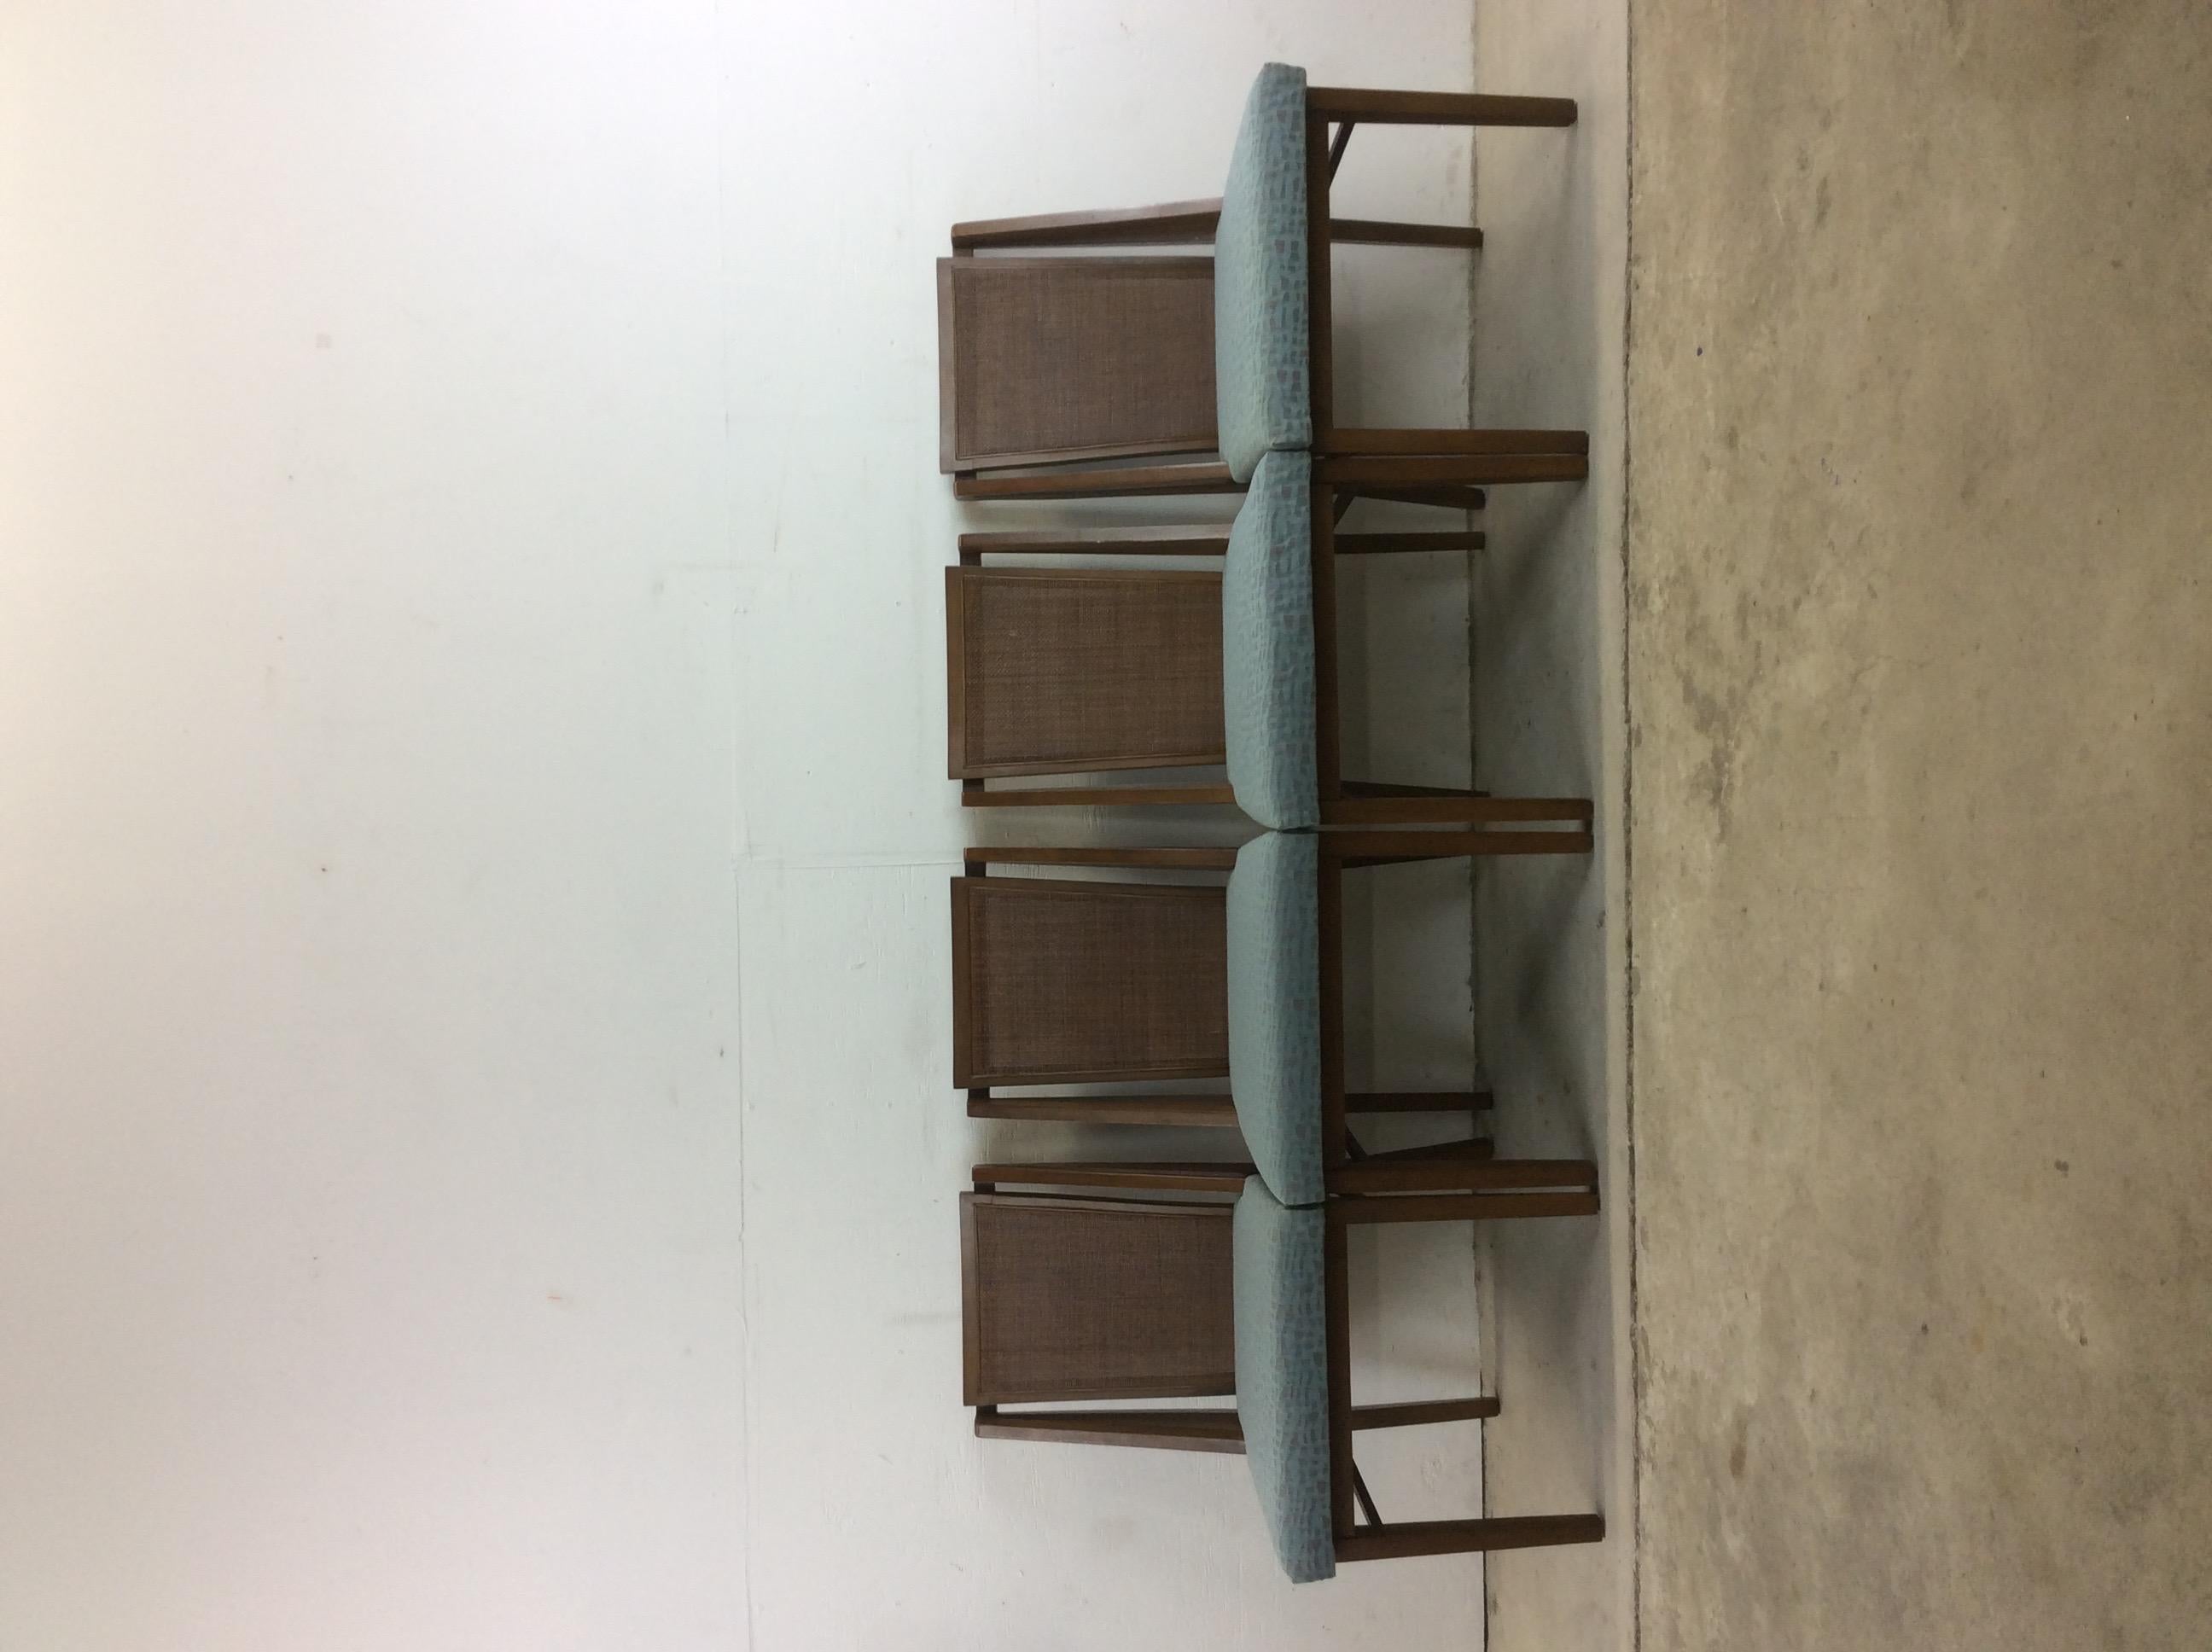 Dieses Set aus vier Esszimmerstühlen von Drexel zeichnet sich durch eine Hartholzkonstruktion, eine originale Walnussoberfläche, eine schöne Rohrrückenlehne und eine Vintage-Polsterung aus.

Abmessungen: 20W 19D 17.5sh 35H.